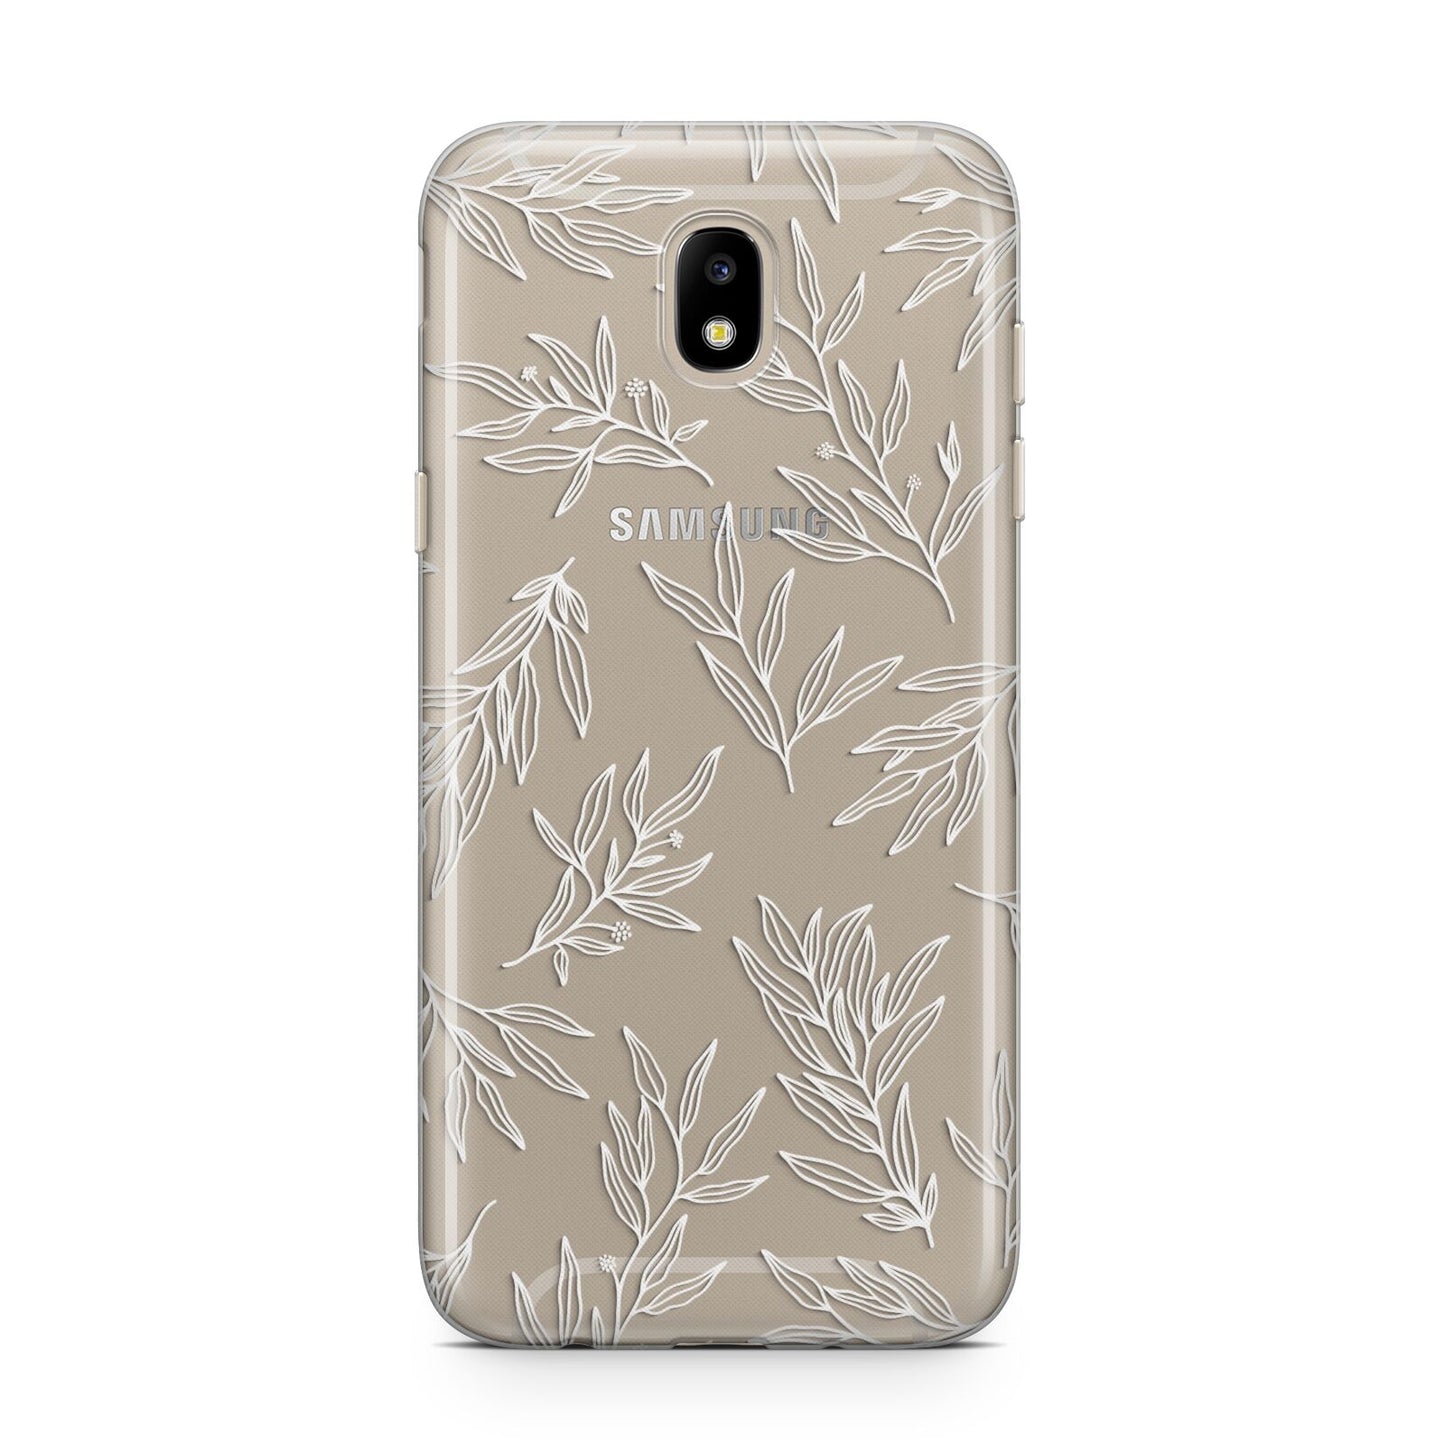 Botanical Leaf Samsung J5 2017 Case